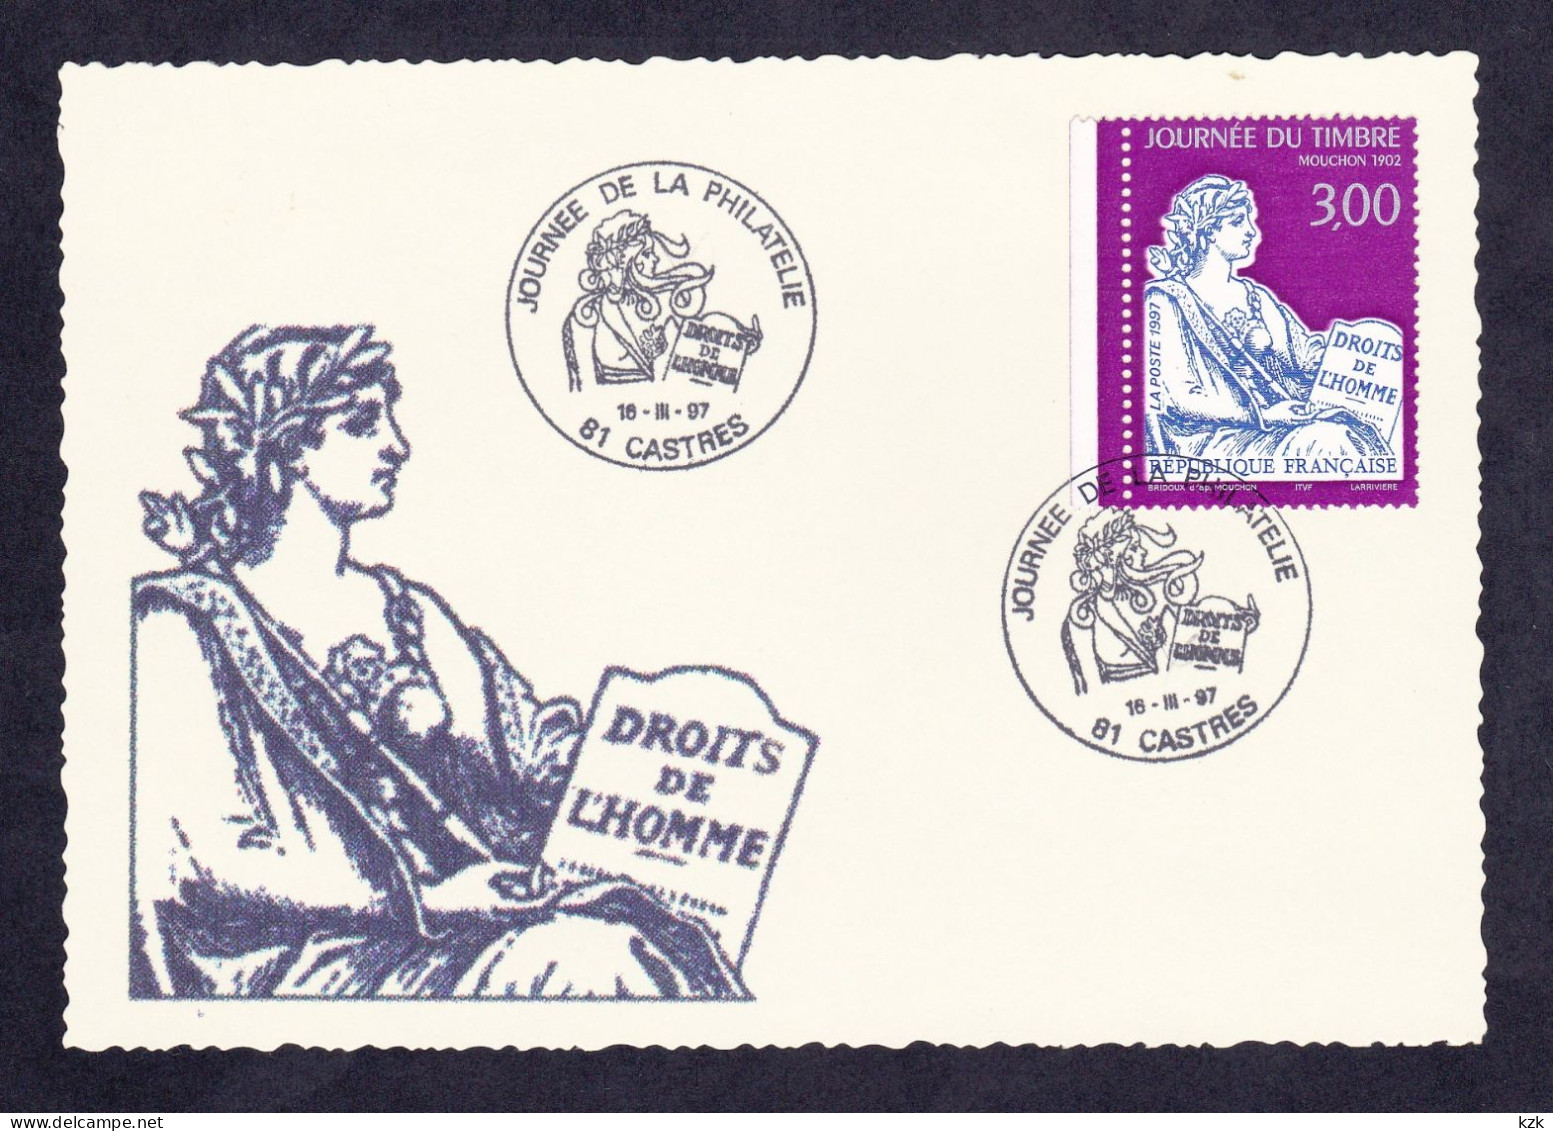 2 09	9701	-	Fête De La Philatélie - Castres 16/03/1997 - Stamp's Day